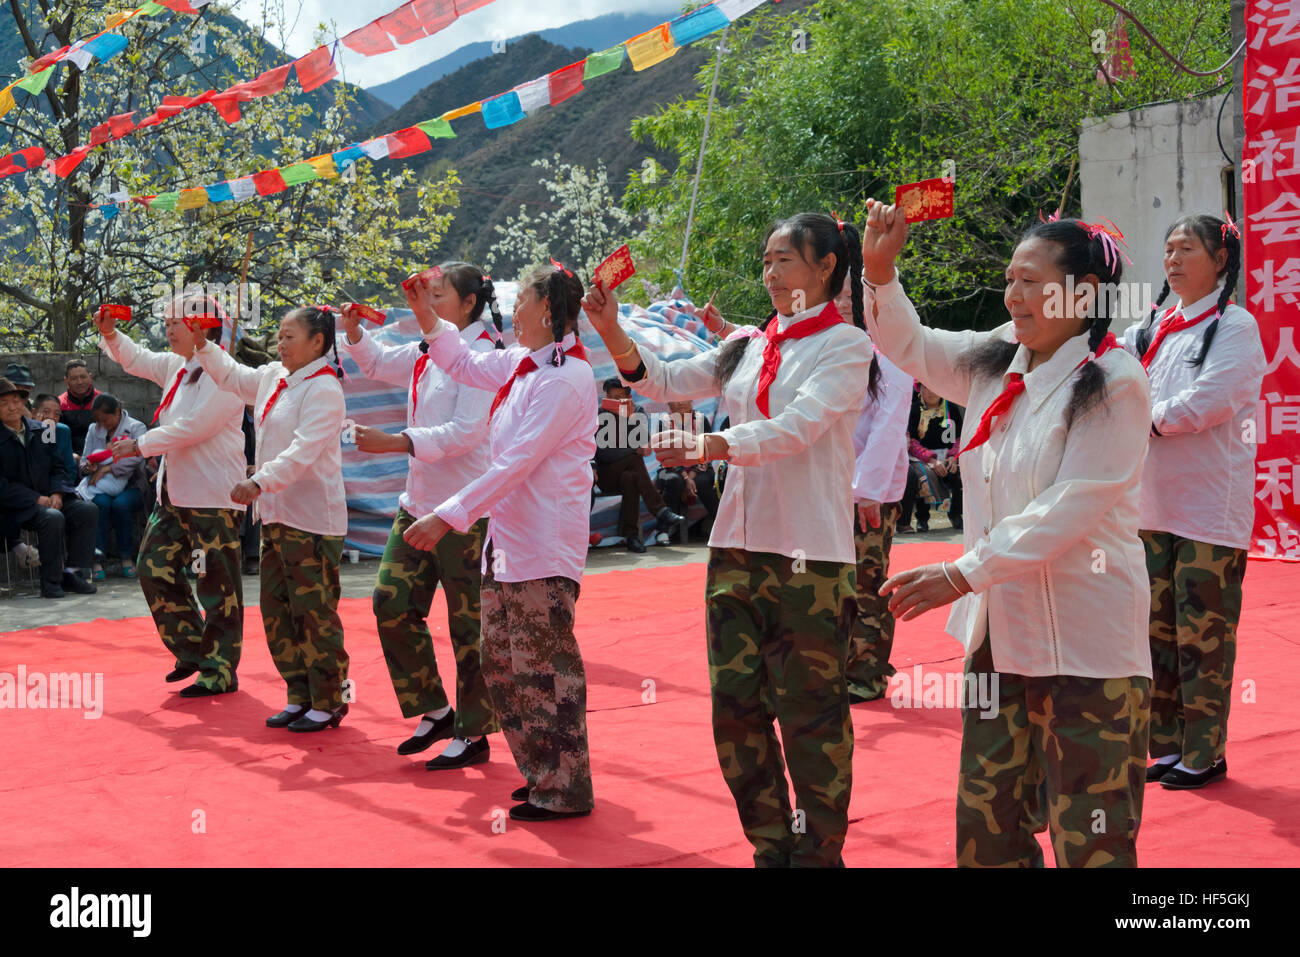 Tanzvorführung mit kulturelle Revolution Ära feiern Birne Blumenfest, Jinchuan, Provinz Sichuan, China Stockfoto